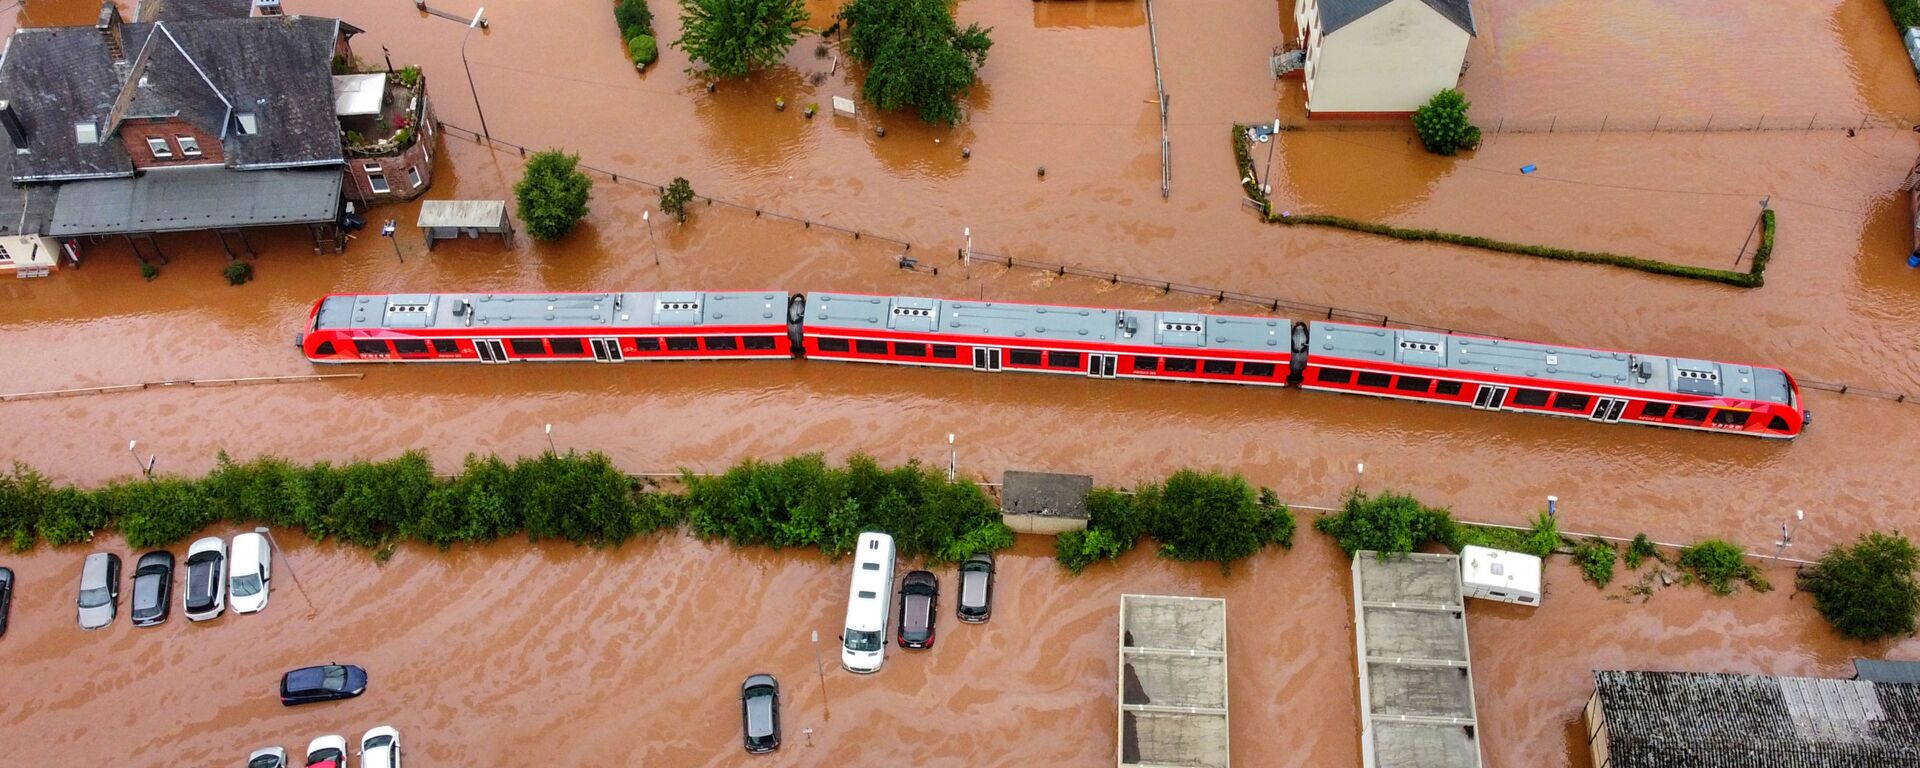 Foto aérea tirada em 15 de julho de 2021 mostra trem regional parado na estação ferroviária da cidade de Kordel, inundada pelas águas do rio Kyll, na Alemanha - Sputnik Brasil, 1920, 15.07.2021